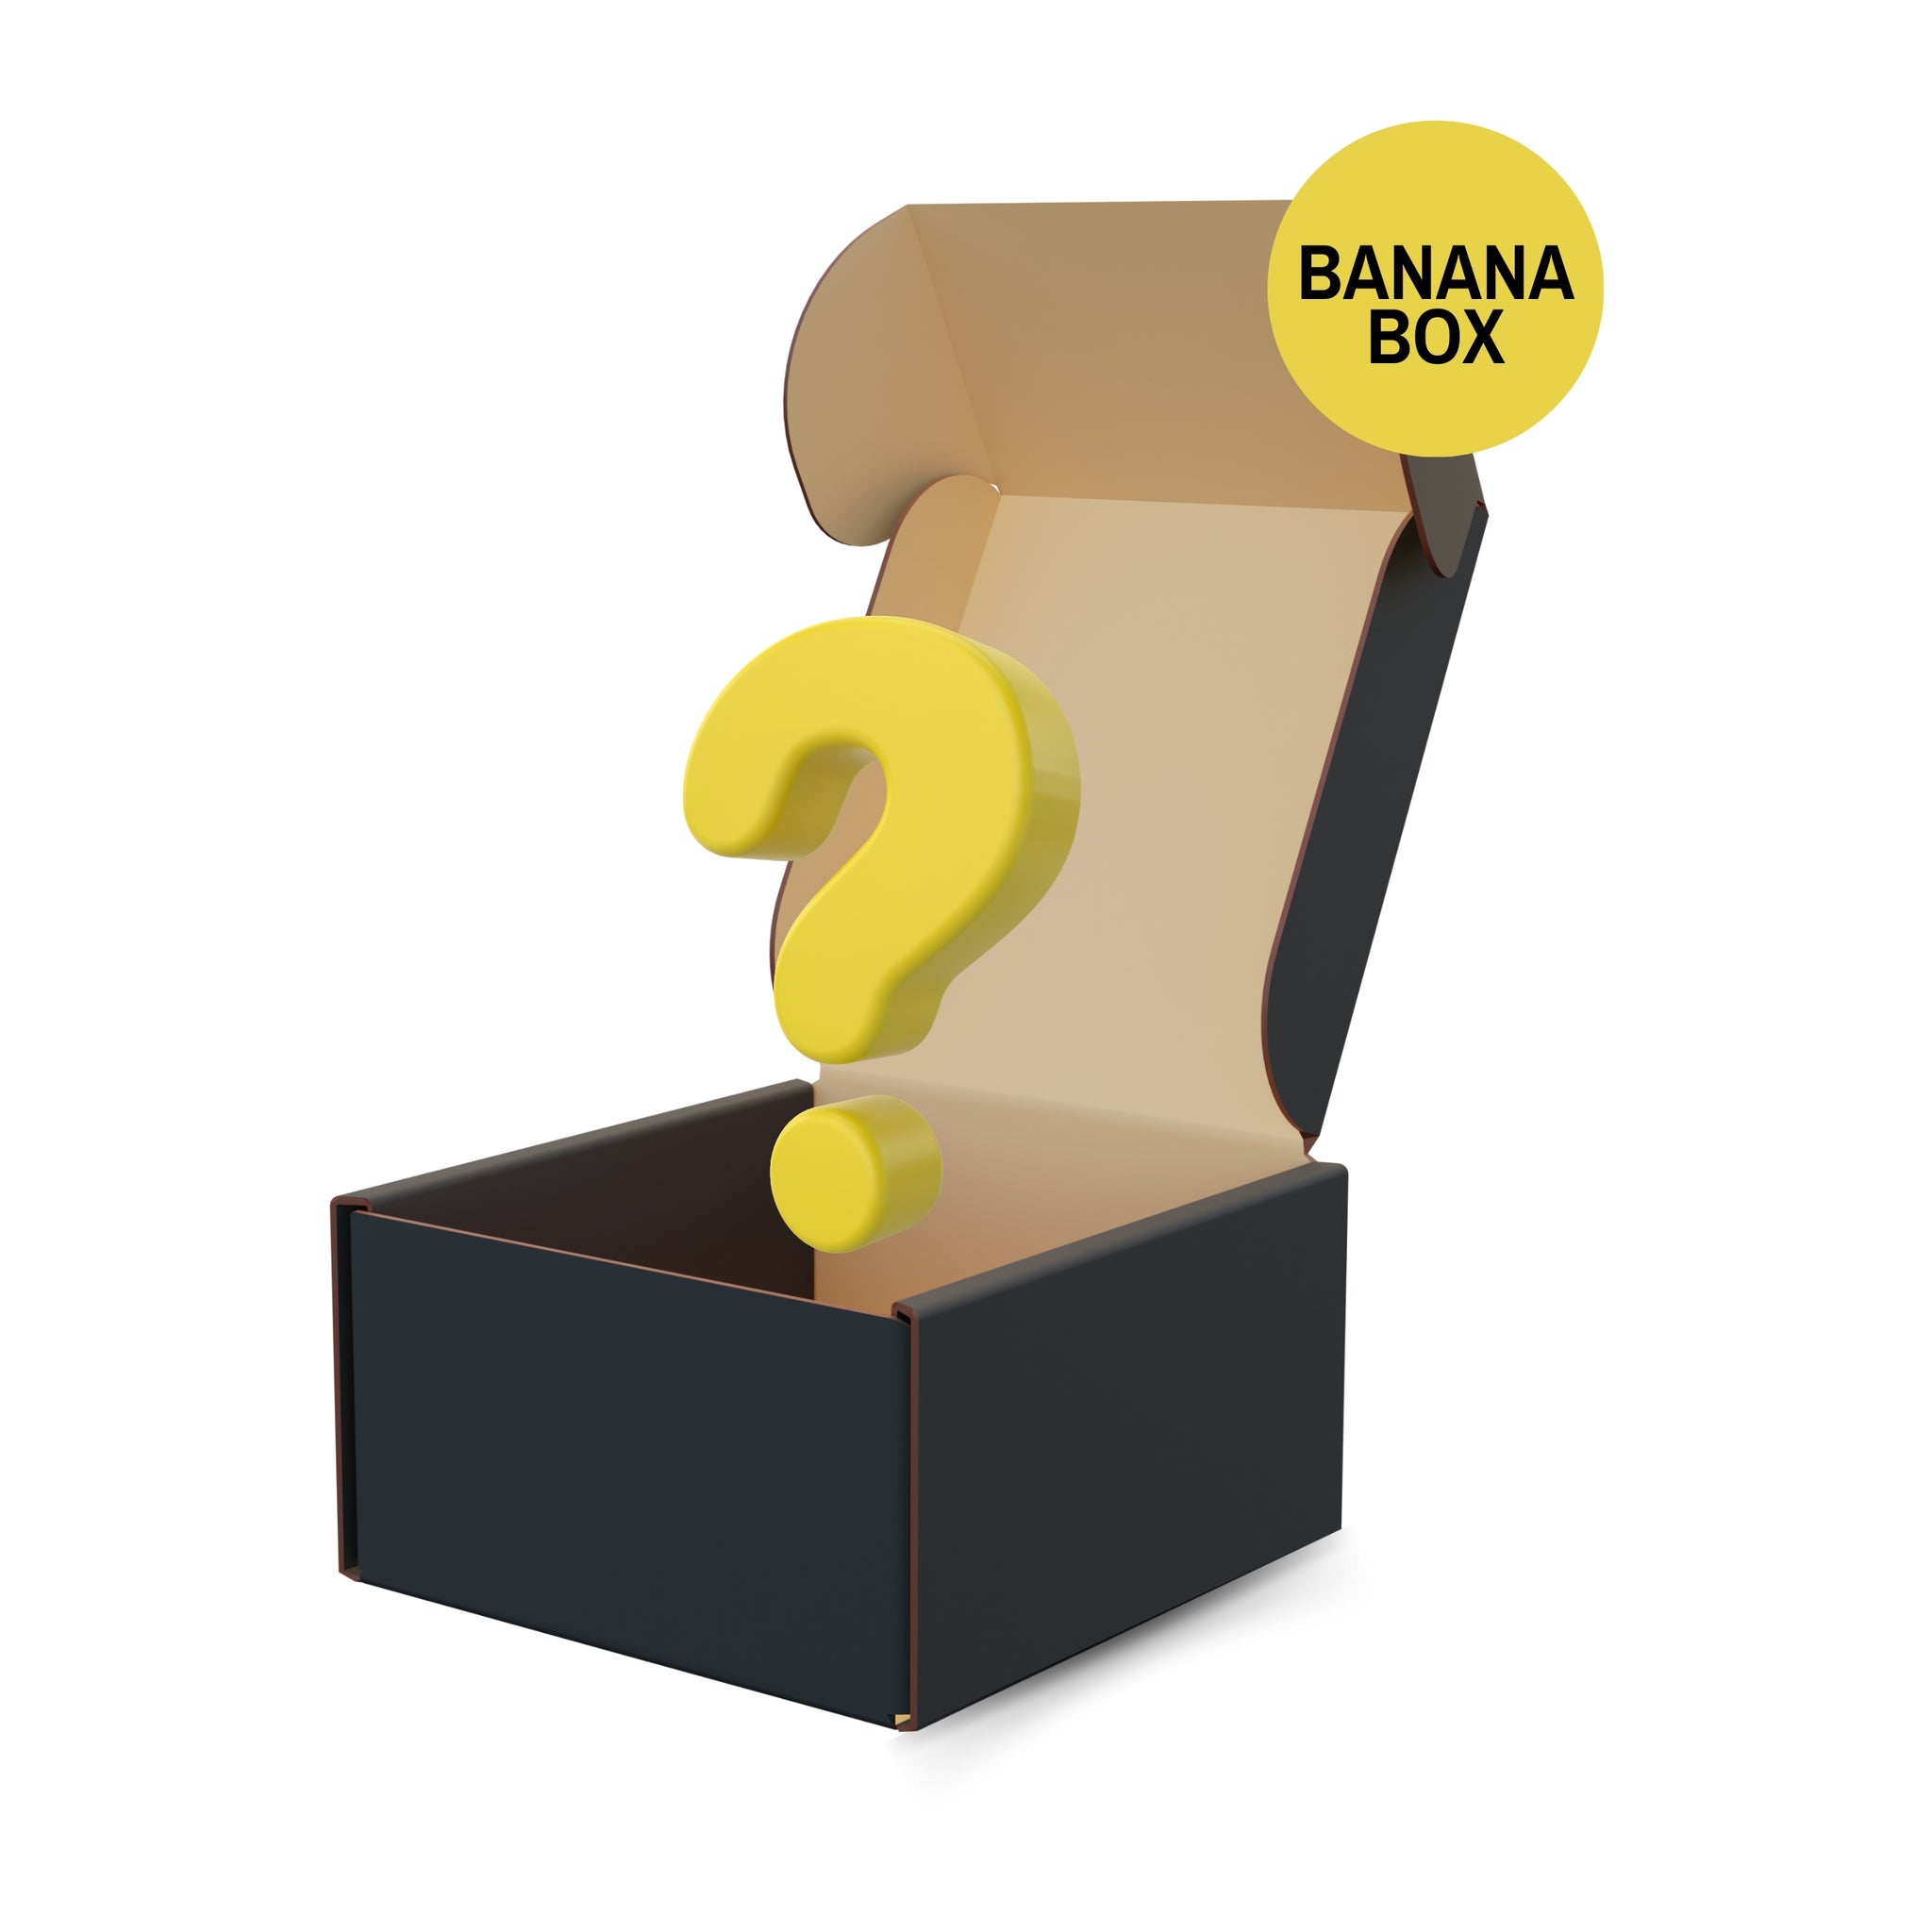 MYSTERY BOXES | Banana Mystery Box